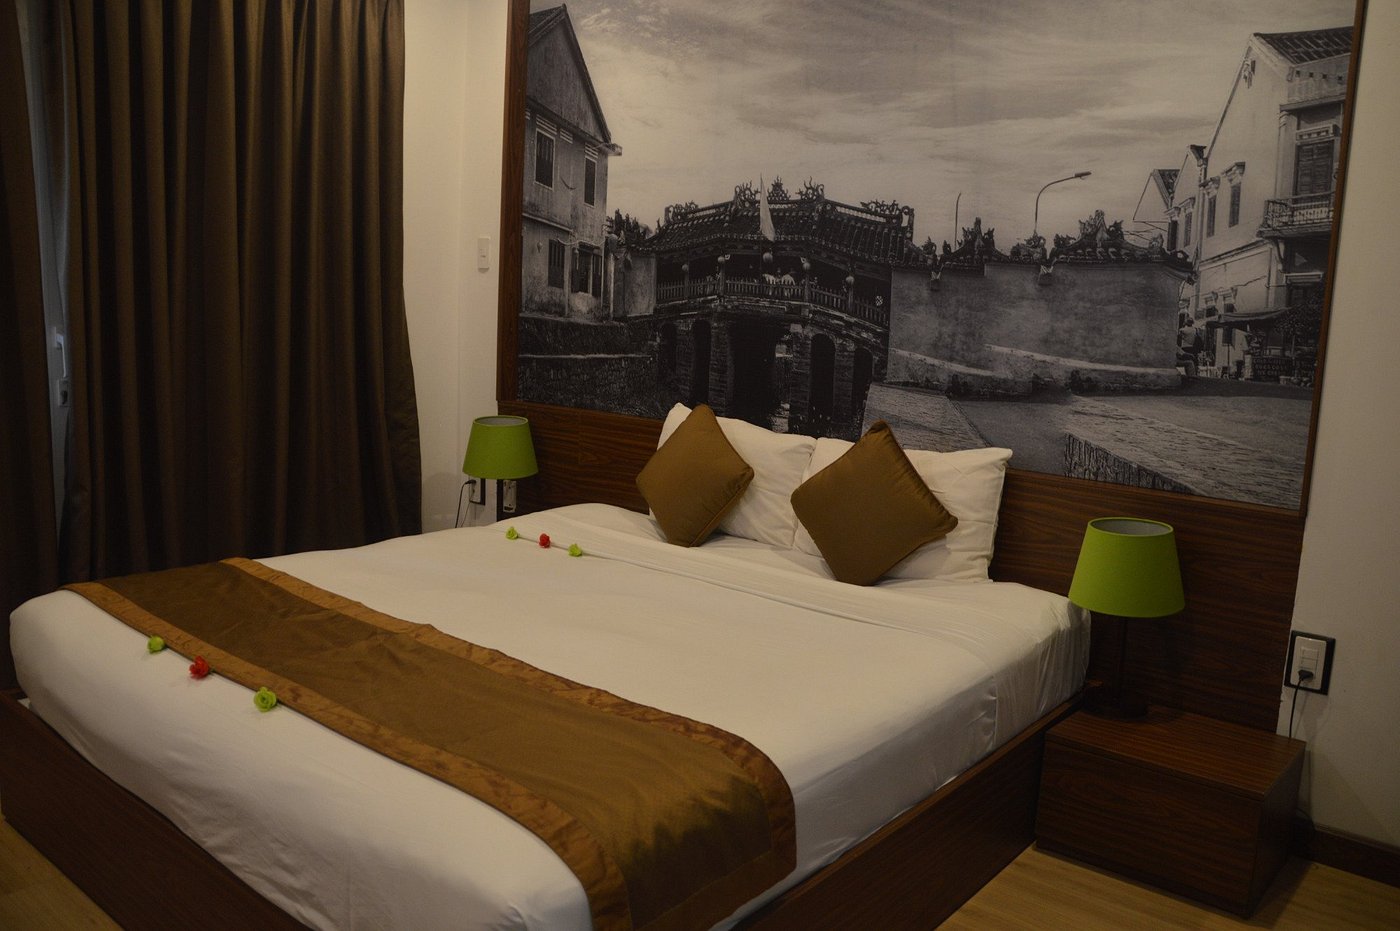 Khách sạn Vĩnh Hưng 2 - Khách sạn 3 sao cách trung tâm 500m với phong cách Á Đông đặc biệt 8